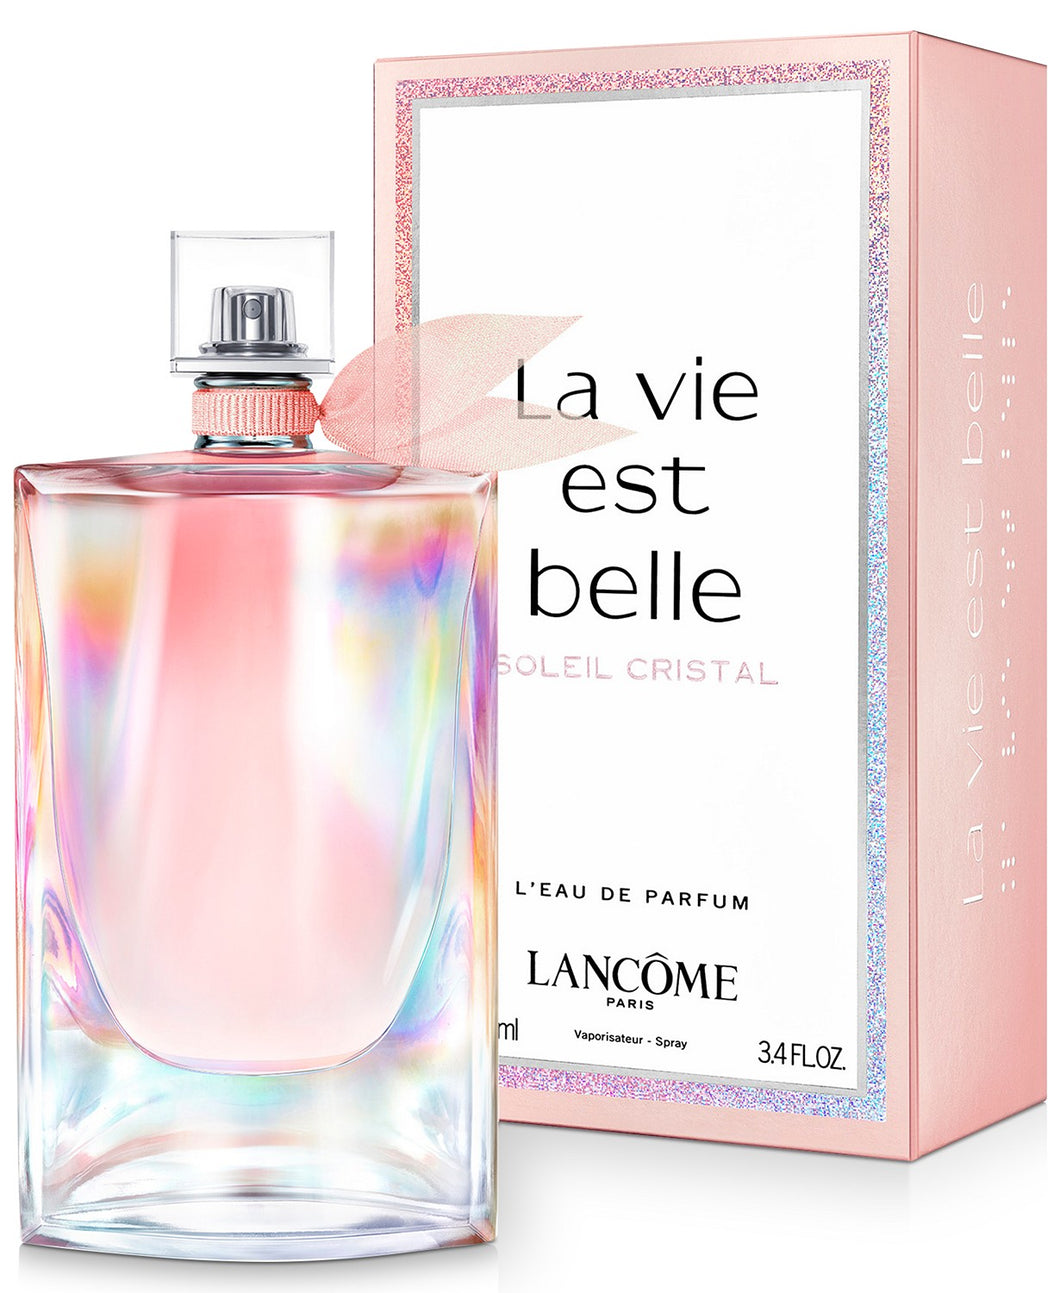 la vie est belle soleil crystal eau de parfum 3.4oz for womans - alwaysspecialgifts.com